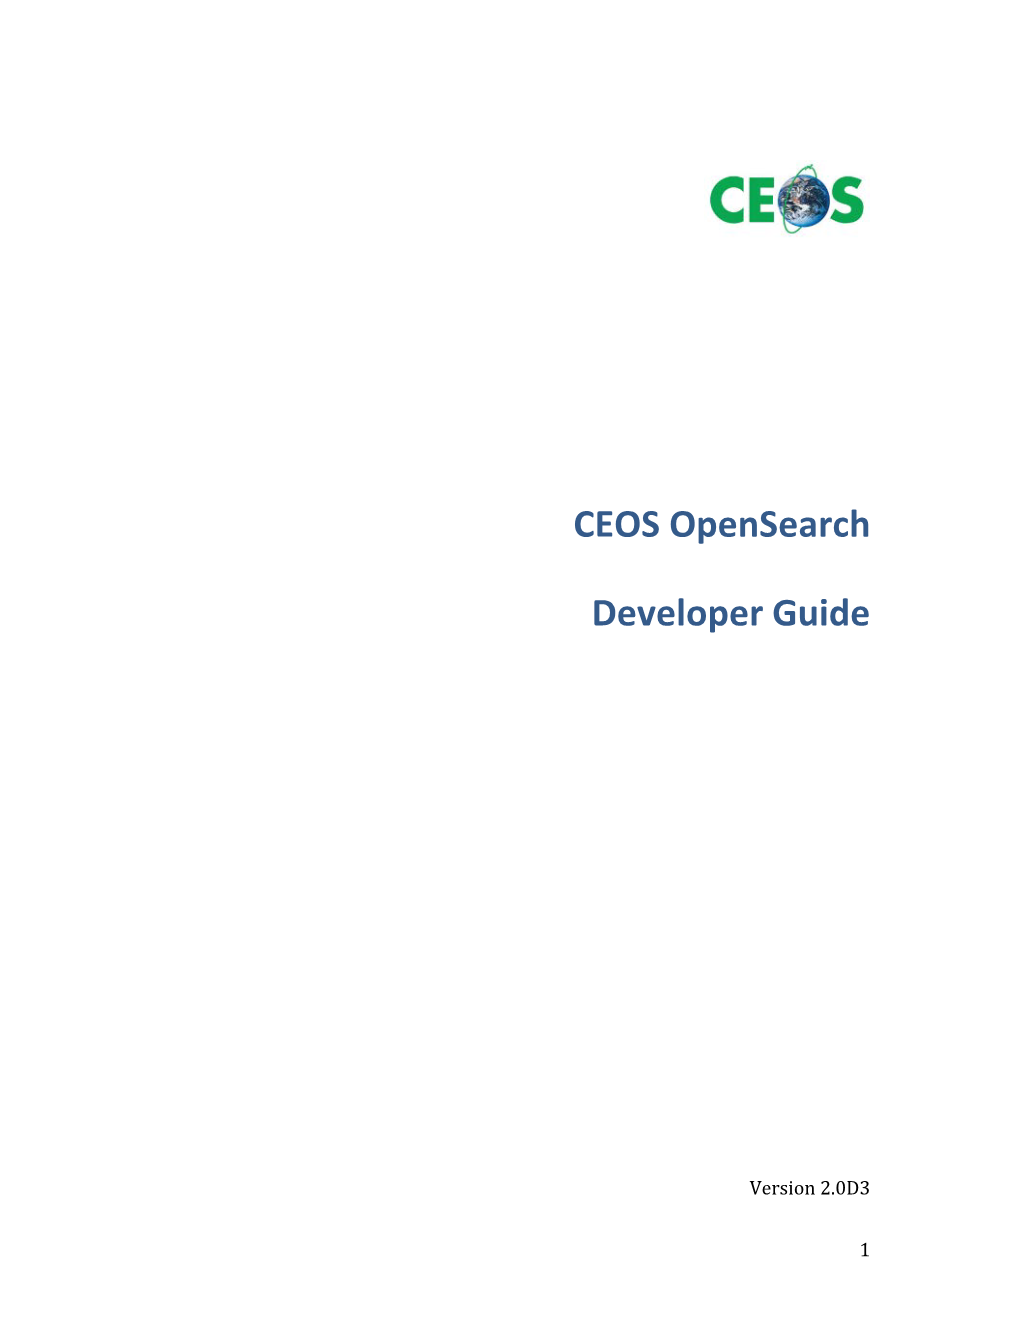 CEOS Opensearch Developer Guide